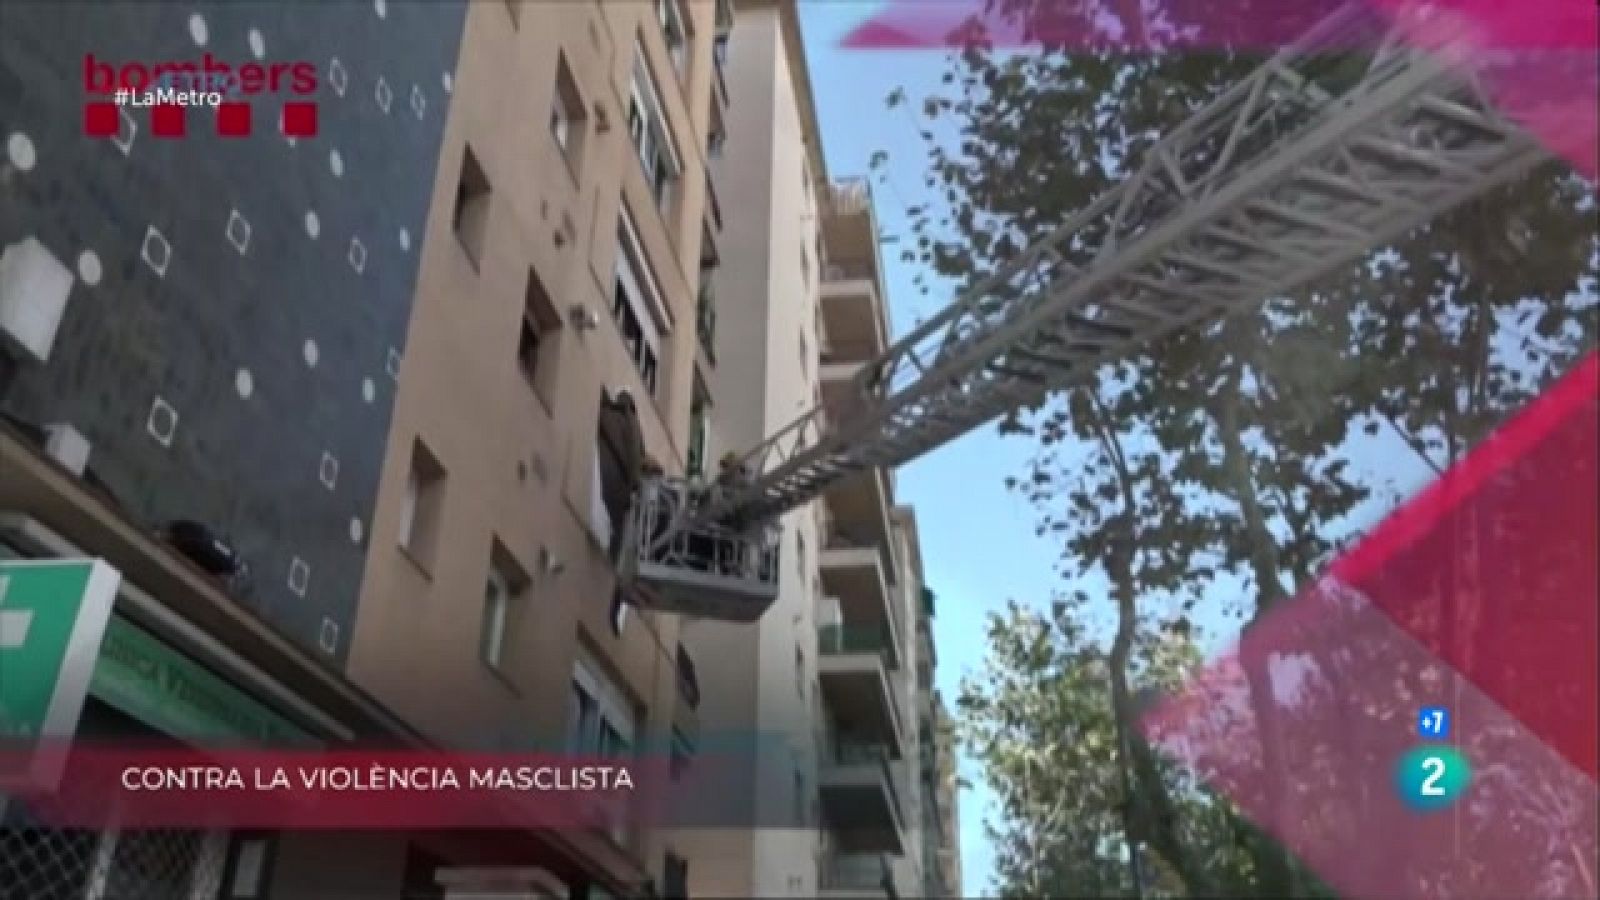 Contra la violència masclista, L'Ateneu, renovat i Va de cabres | La Metro - RTVE Catalunya